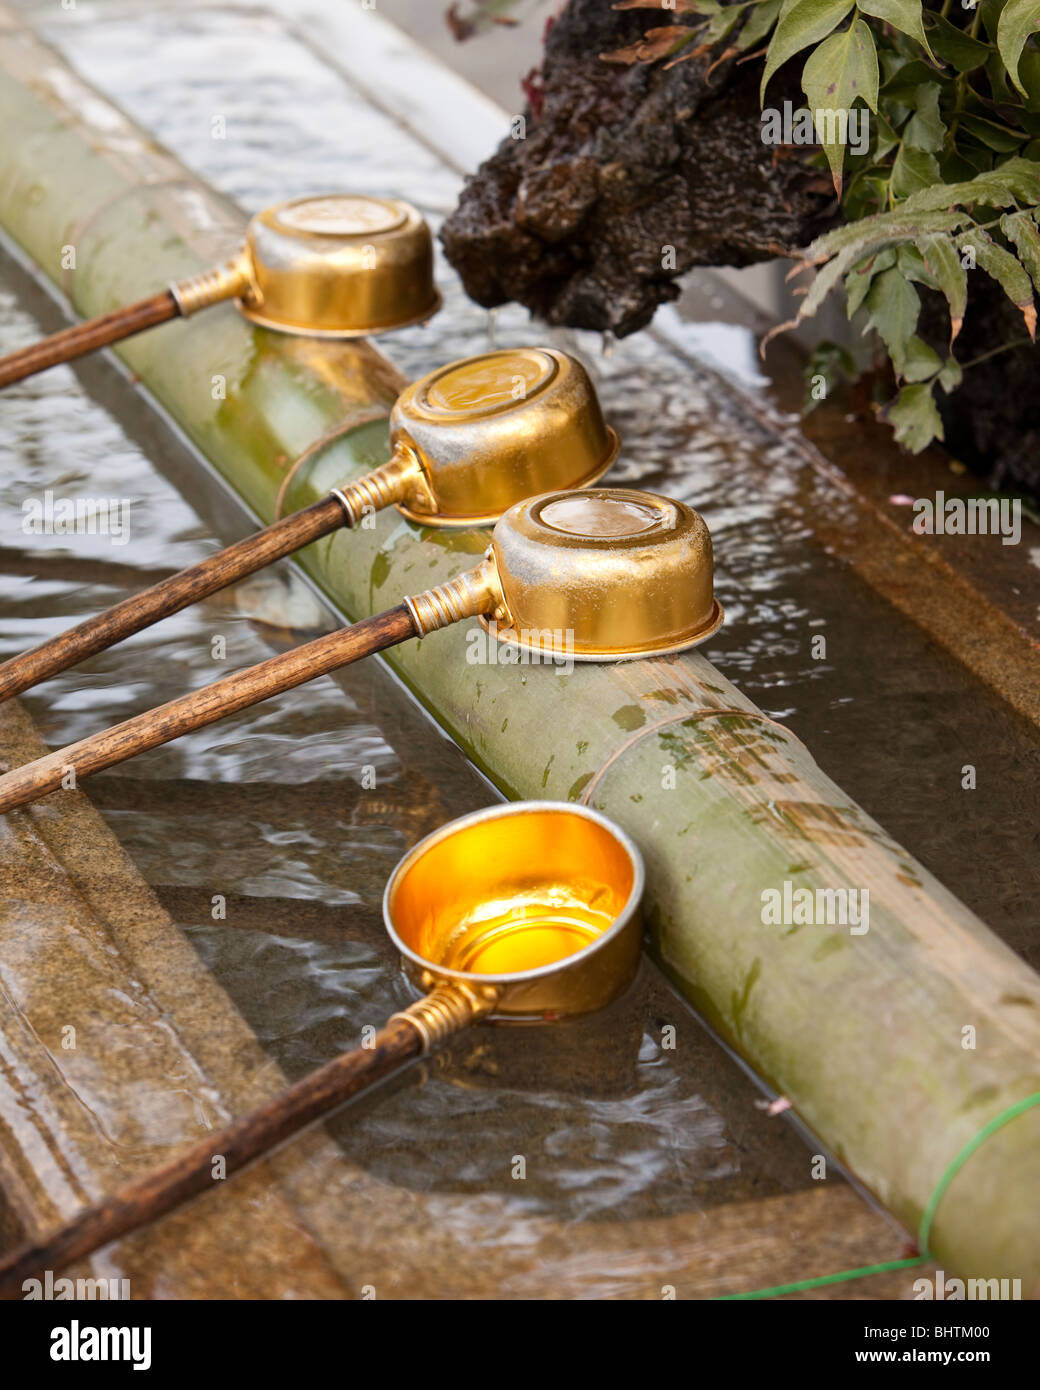 Quattro siviere metallico pieno di acqua sono in attesa di essere utilizzato per una purificazione rituale. Foto Stock